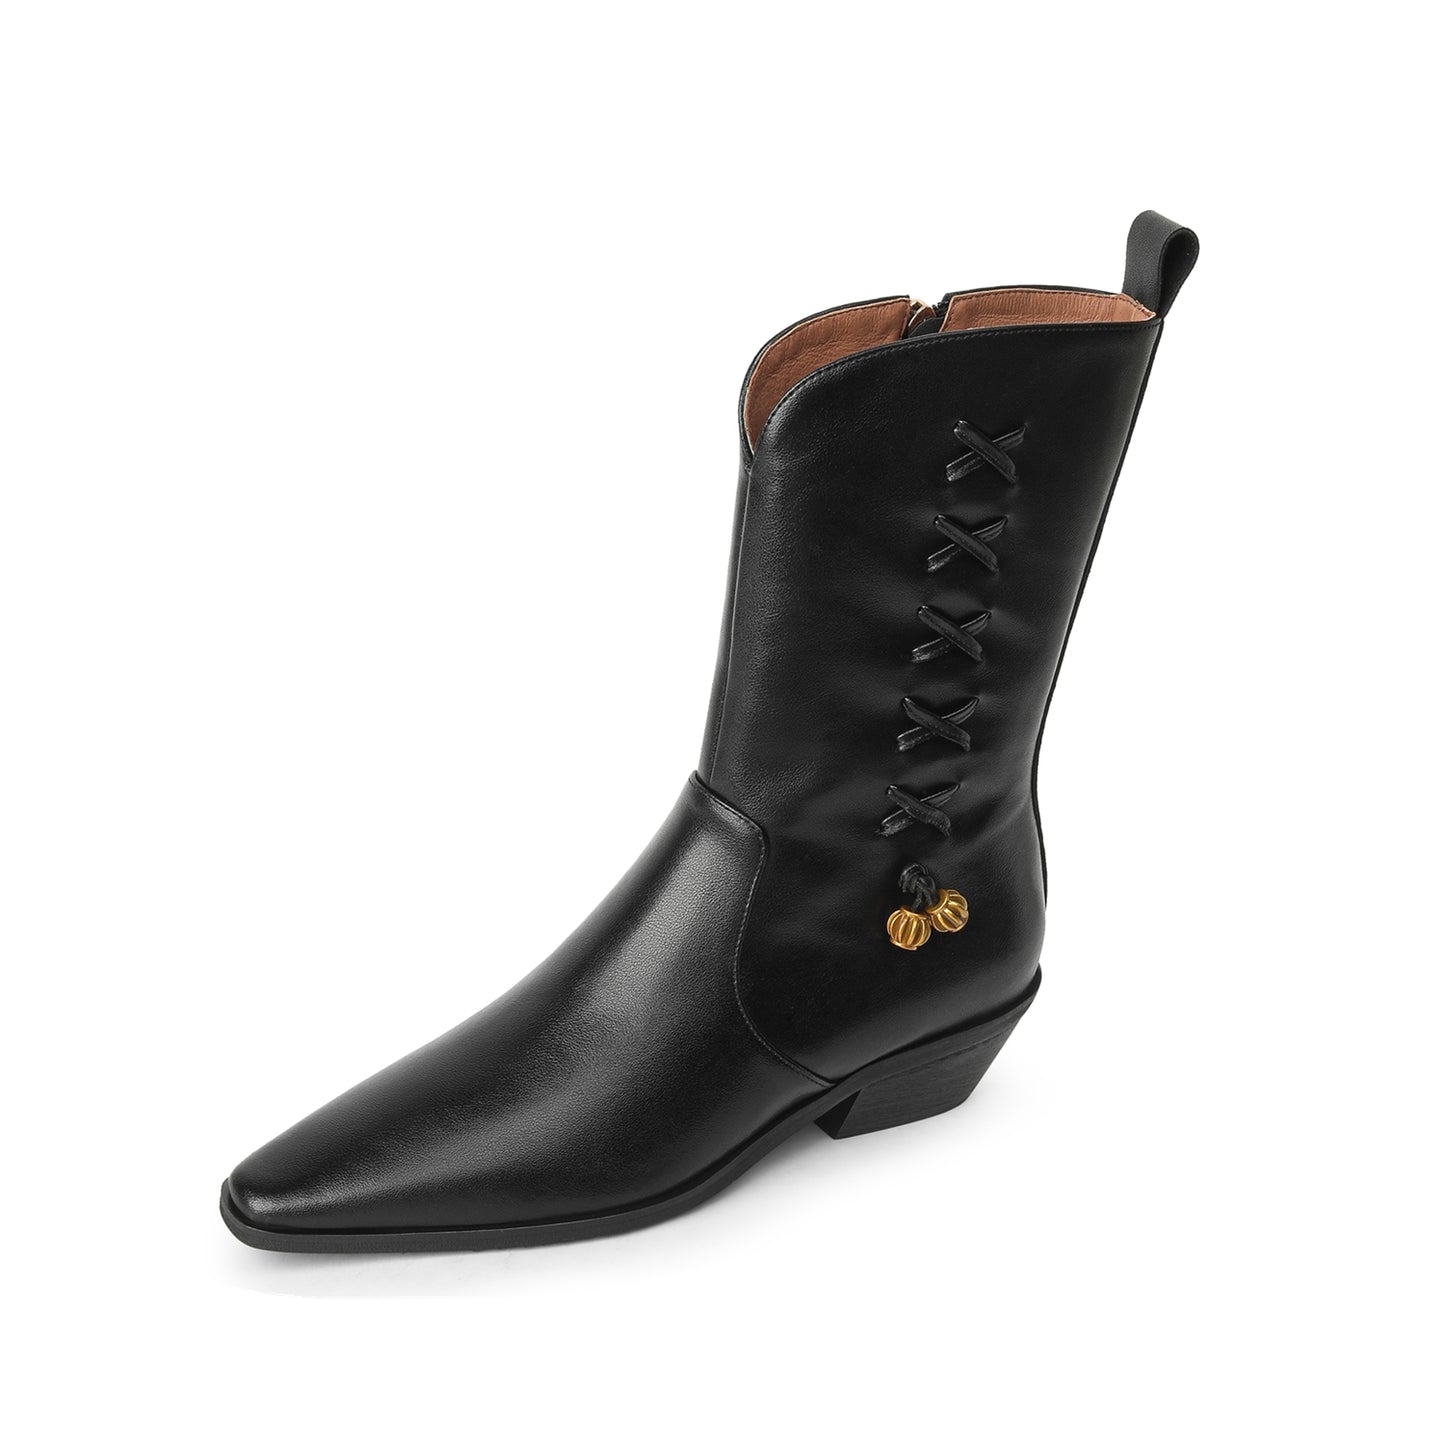 TinaCus Women's Genuine Leather Handmade Block Heel Side Zip Up Mid Calf Boots